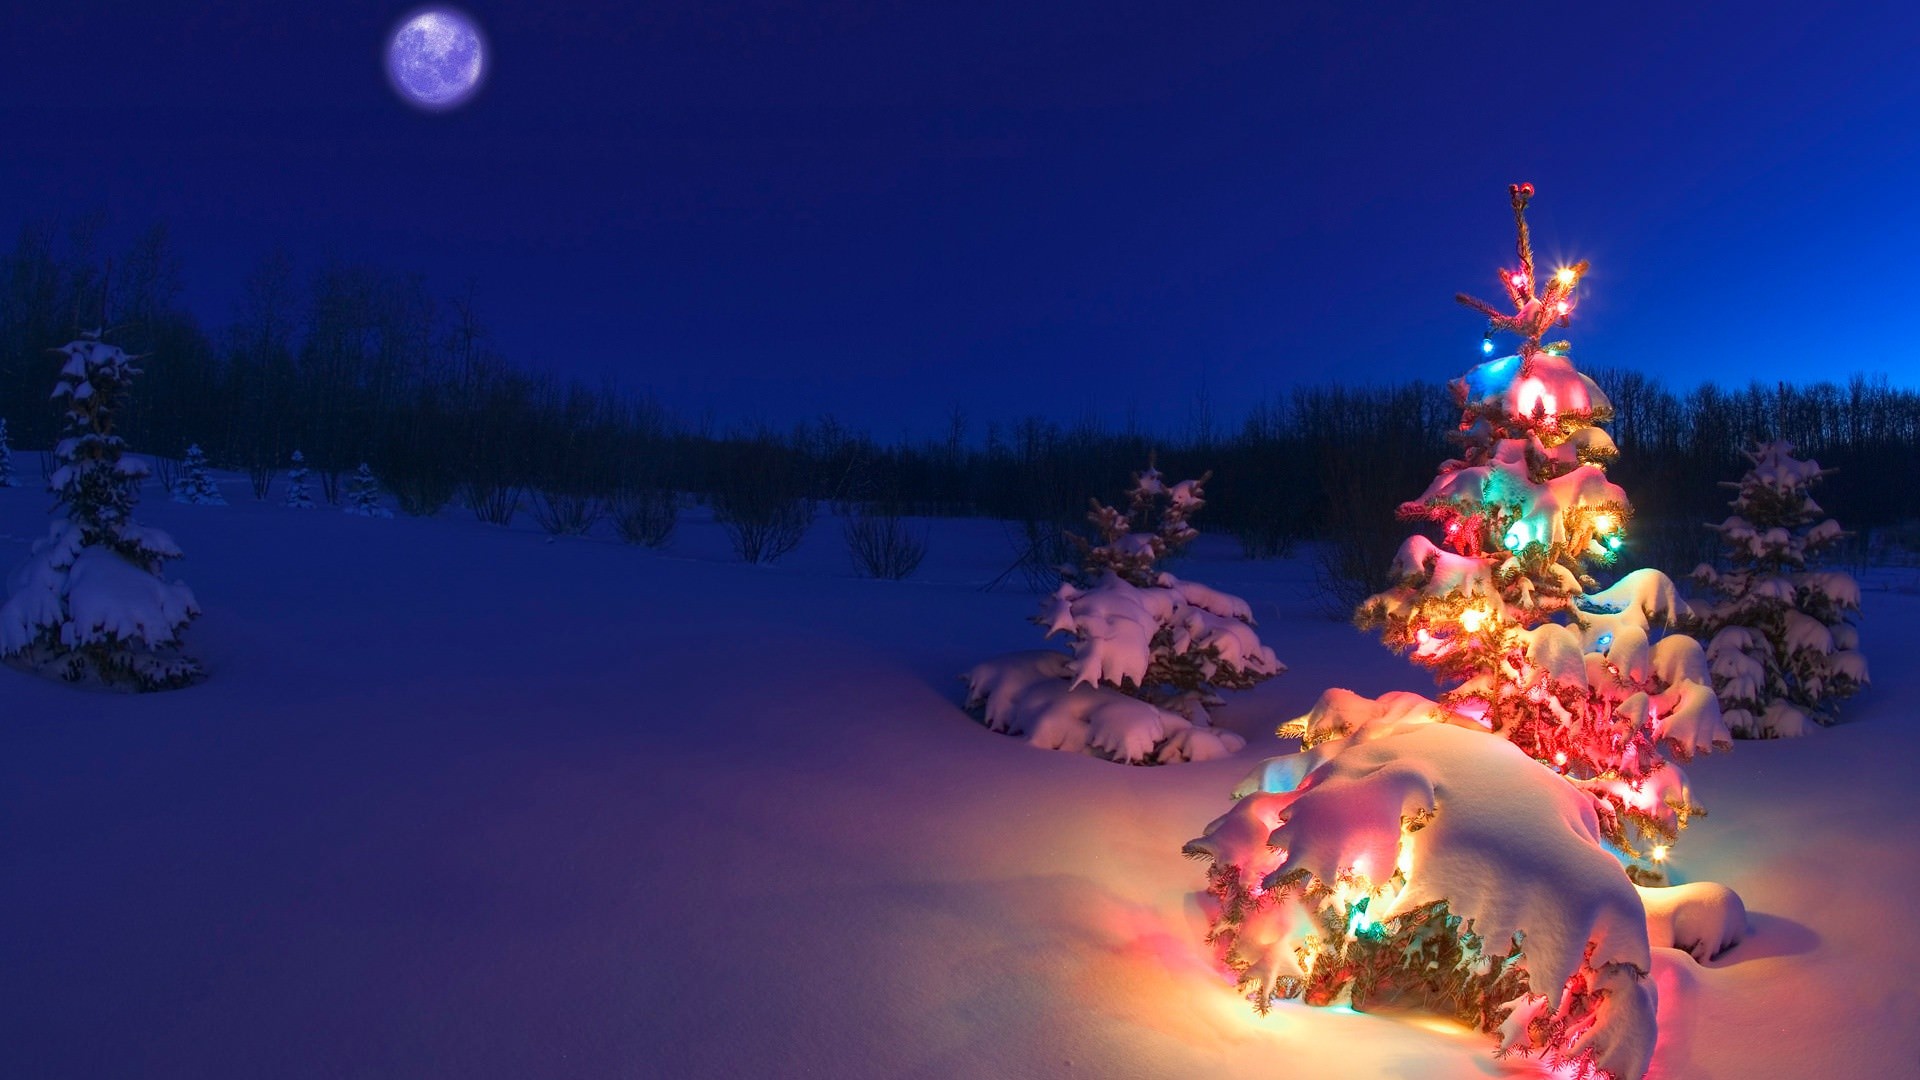 夜のクリスマスツリー